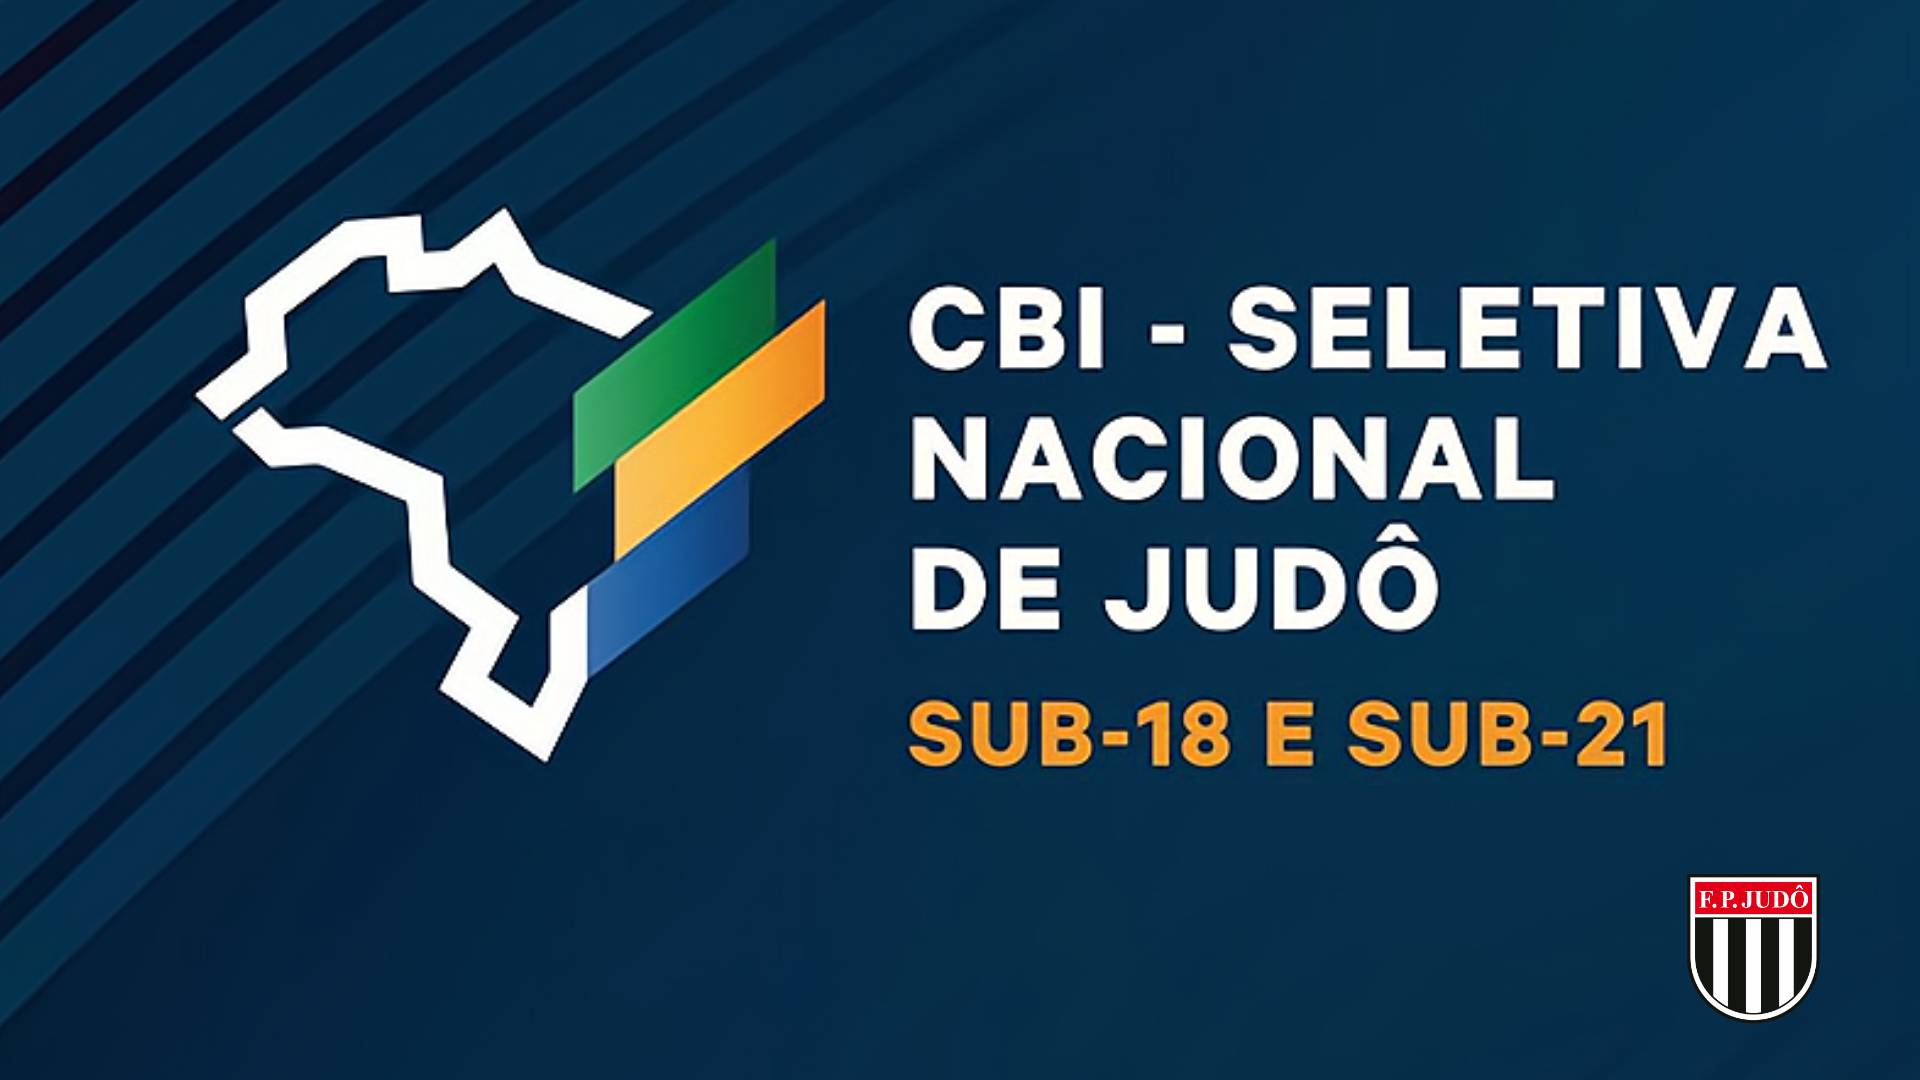 Outline Seletiva Nacional Sub-18 Sub-21